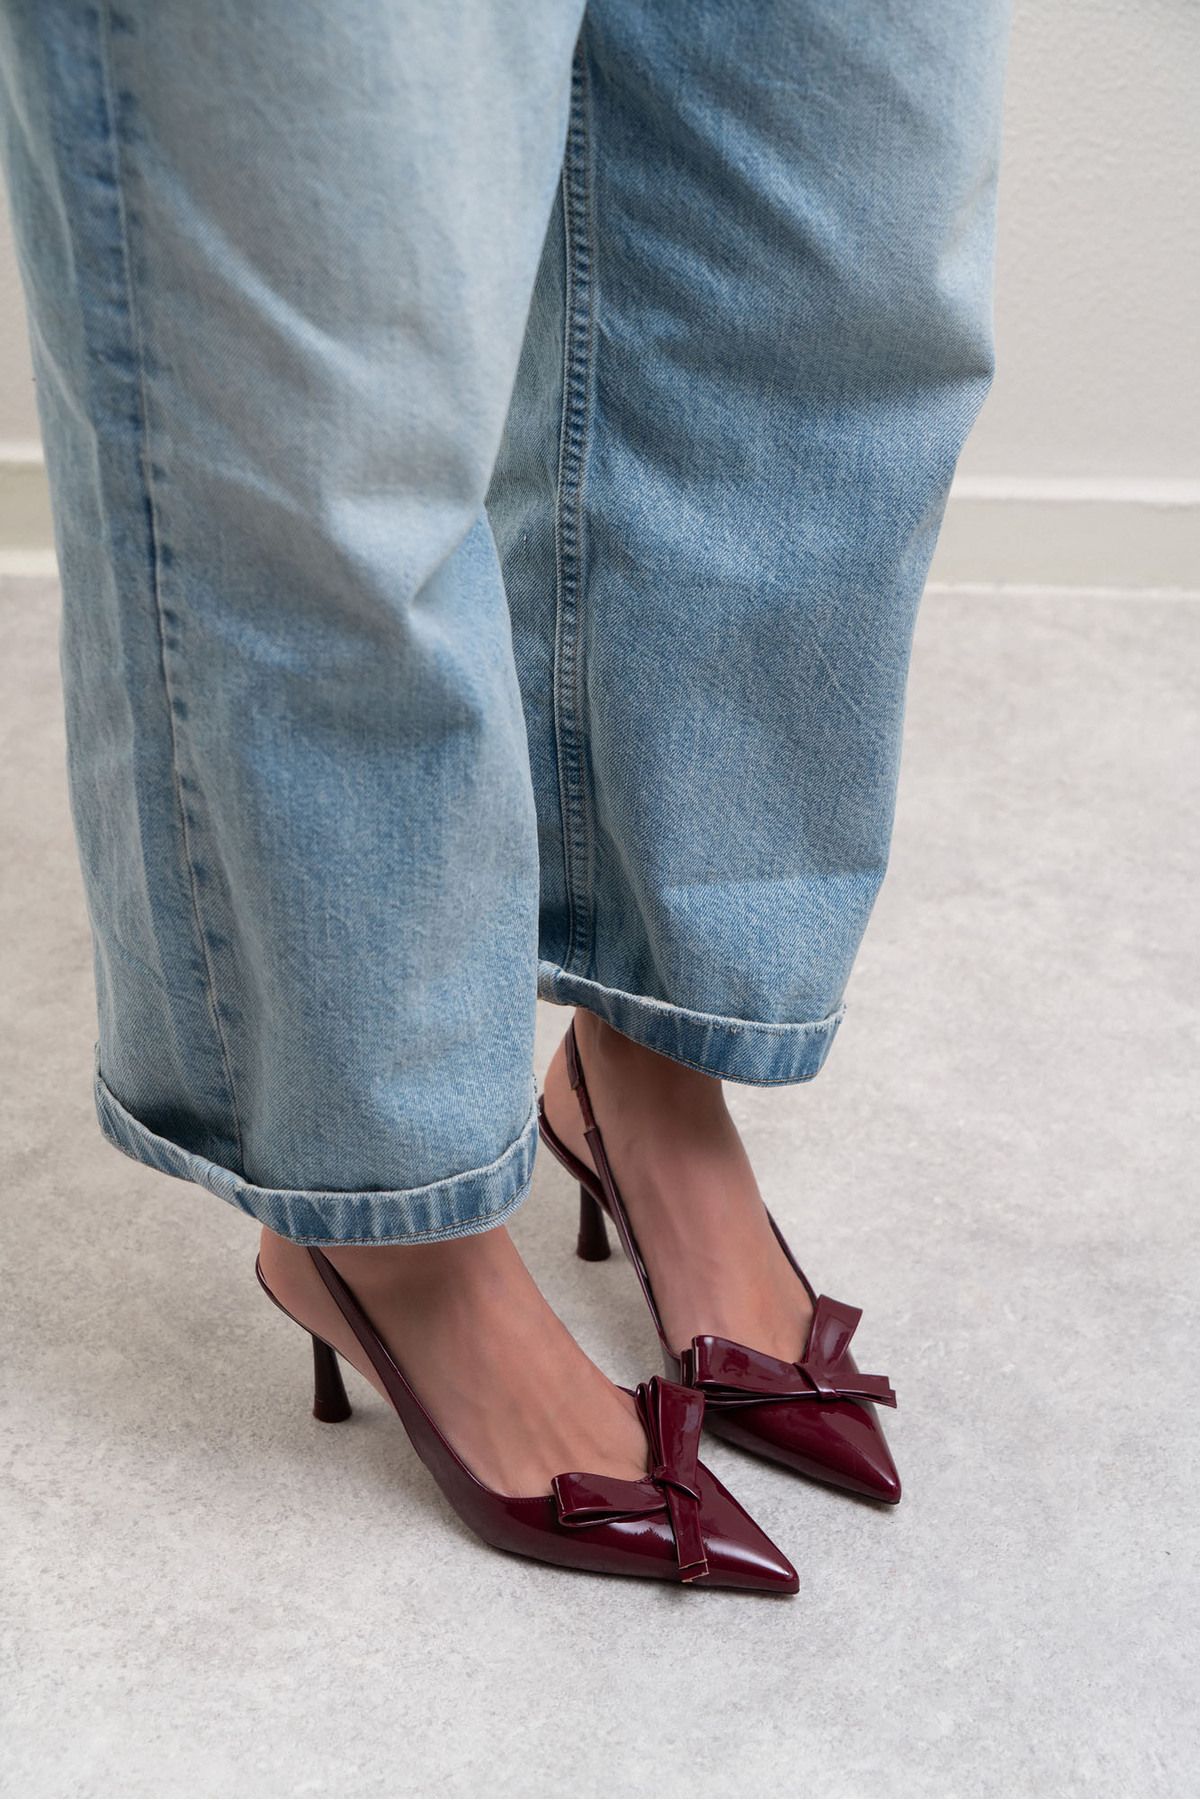 NİŞANTAŞI SHOES Lucinda Bordo Rugan Fiyonk Detay Bilek Bağlı Kadın Topuklu Ayakkabı